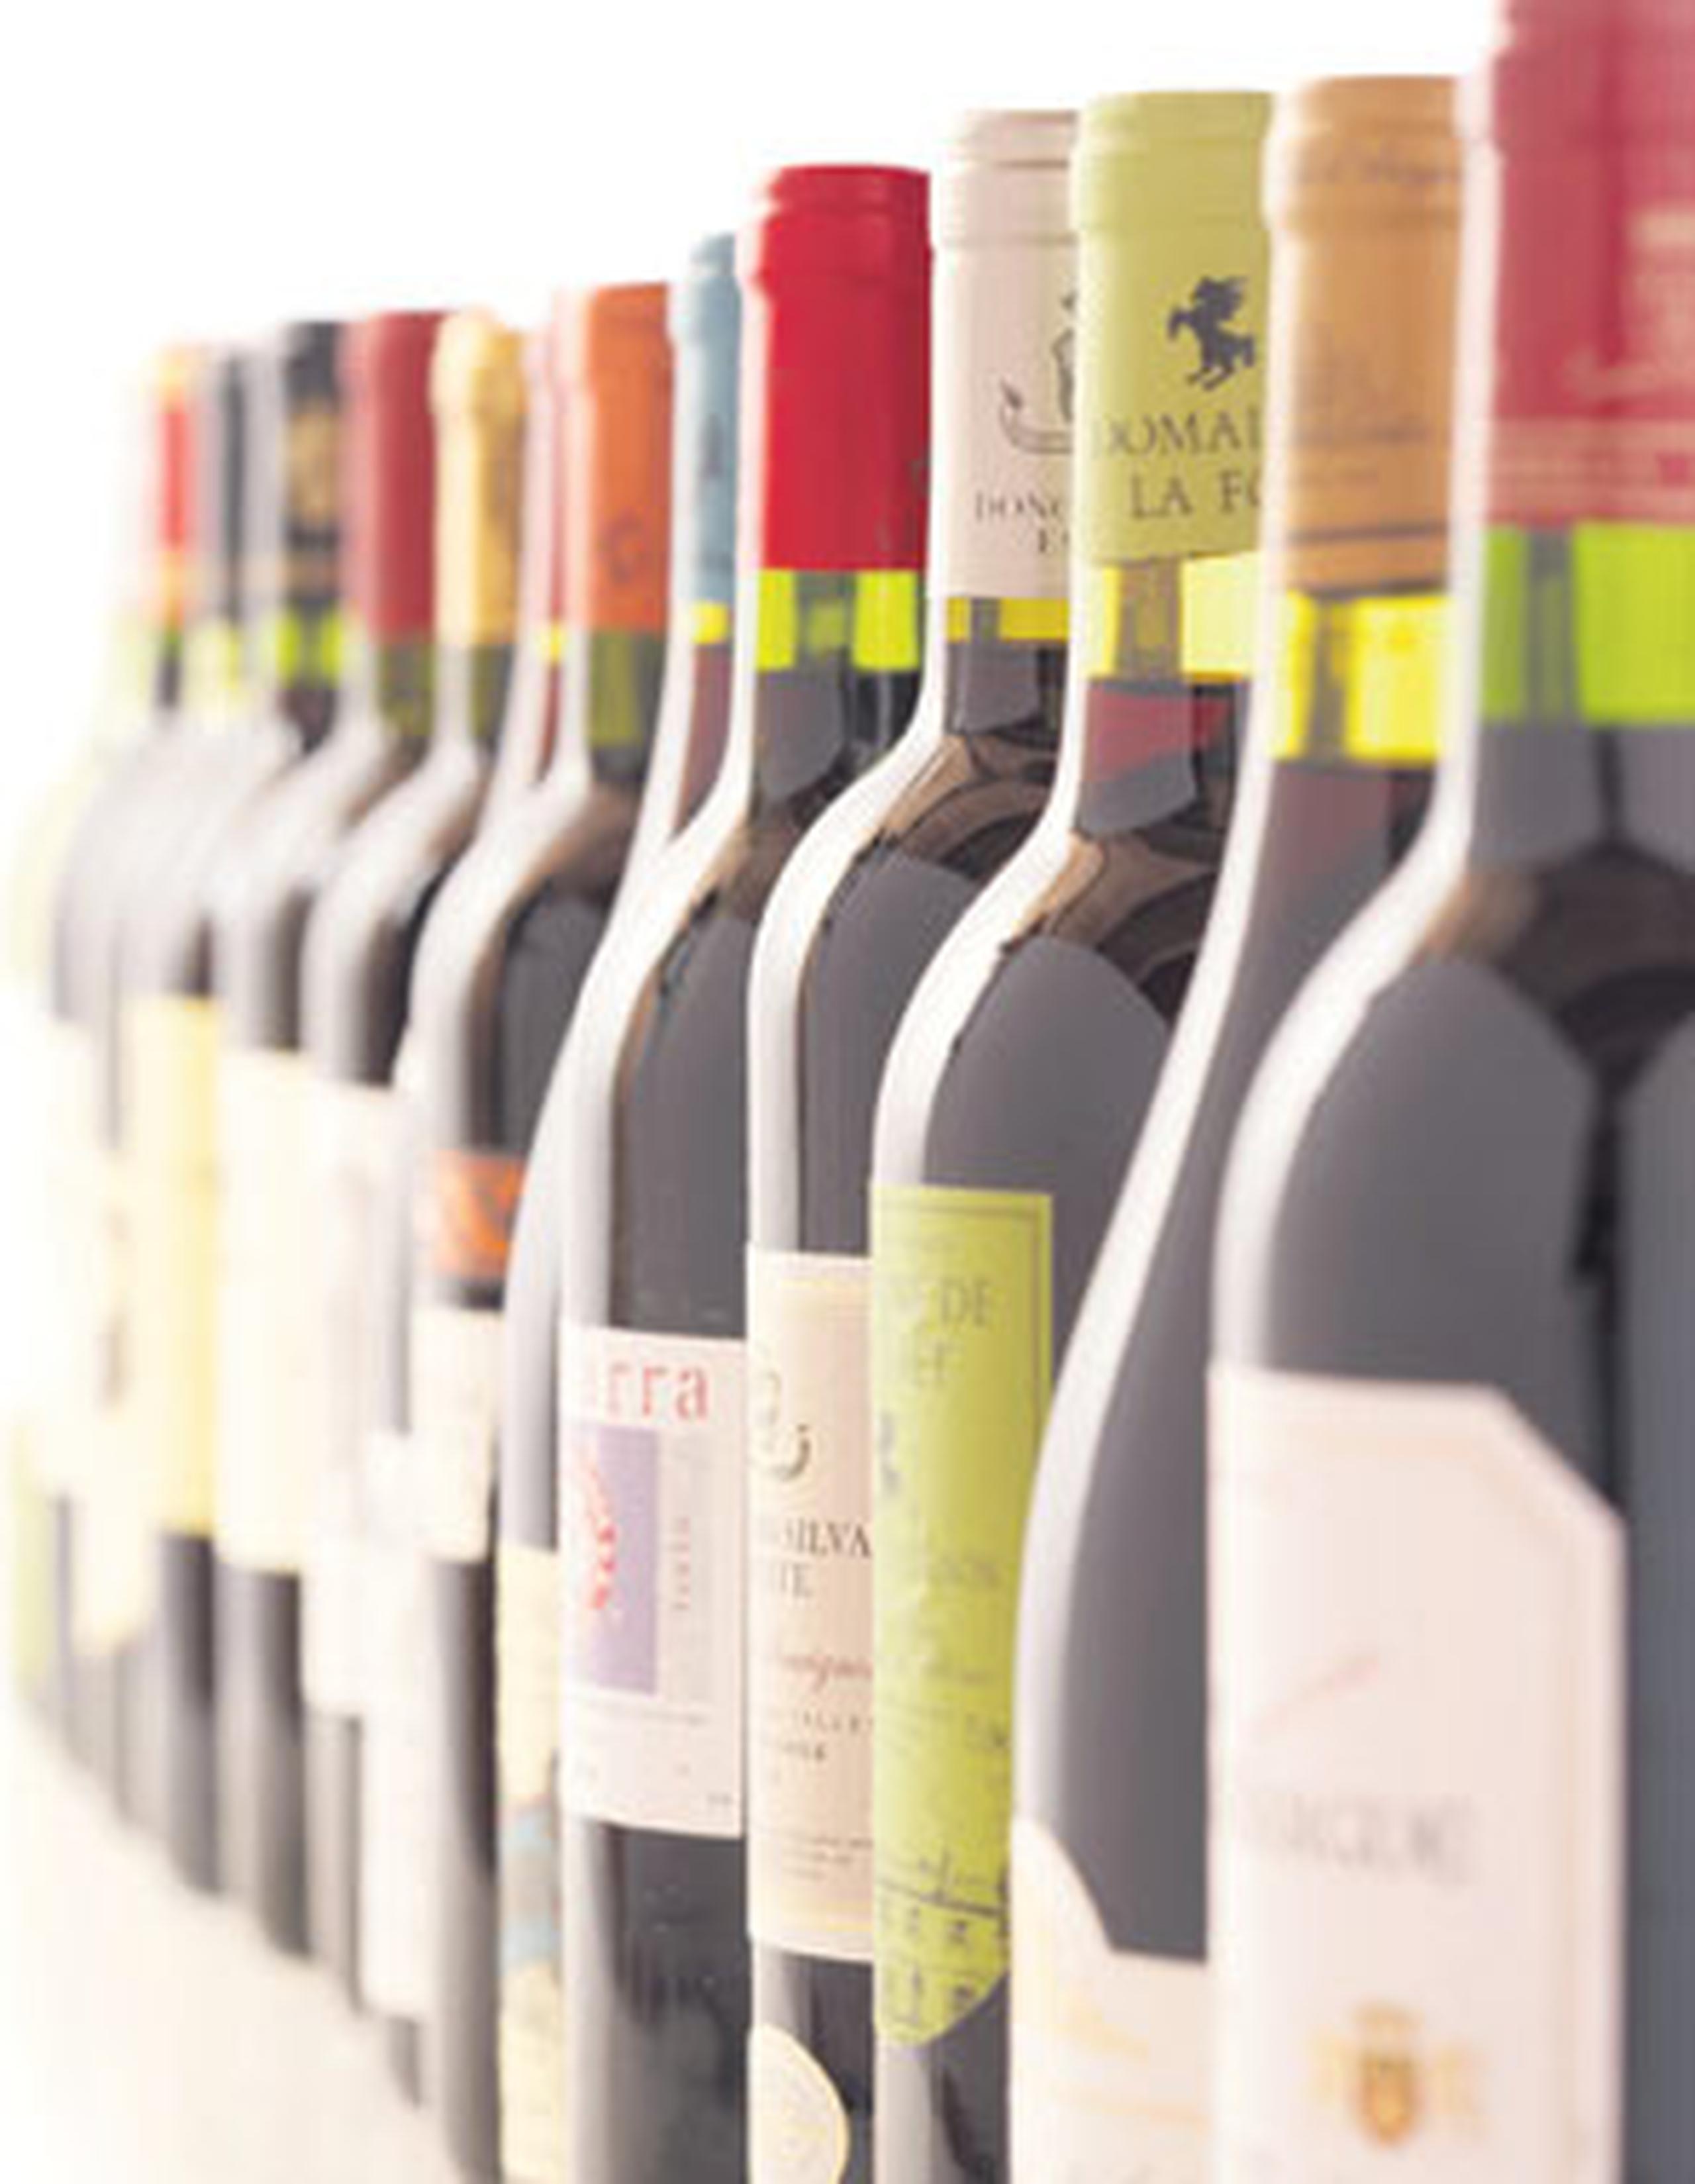 Si se prefieren los vinos espumosos España es un gran productor de Cava e Italia de Prosecco. (Archivo)